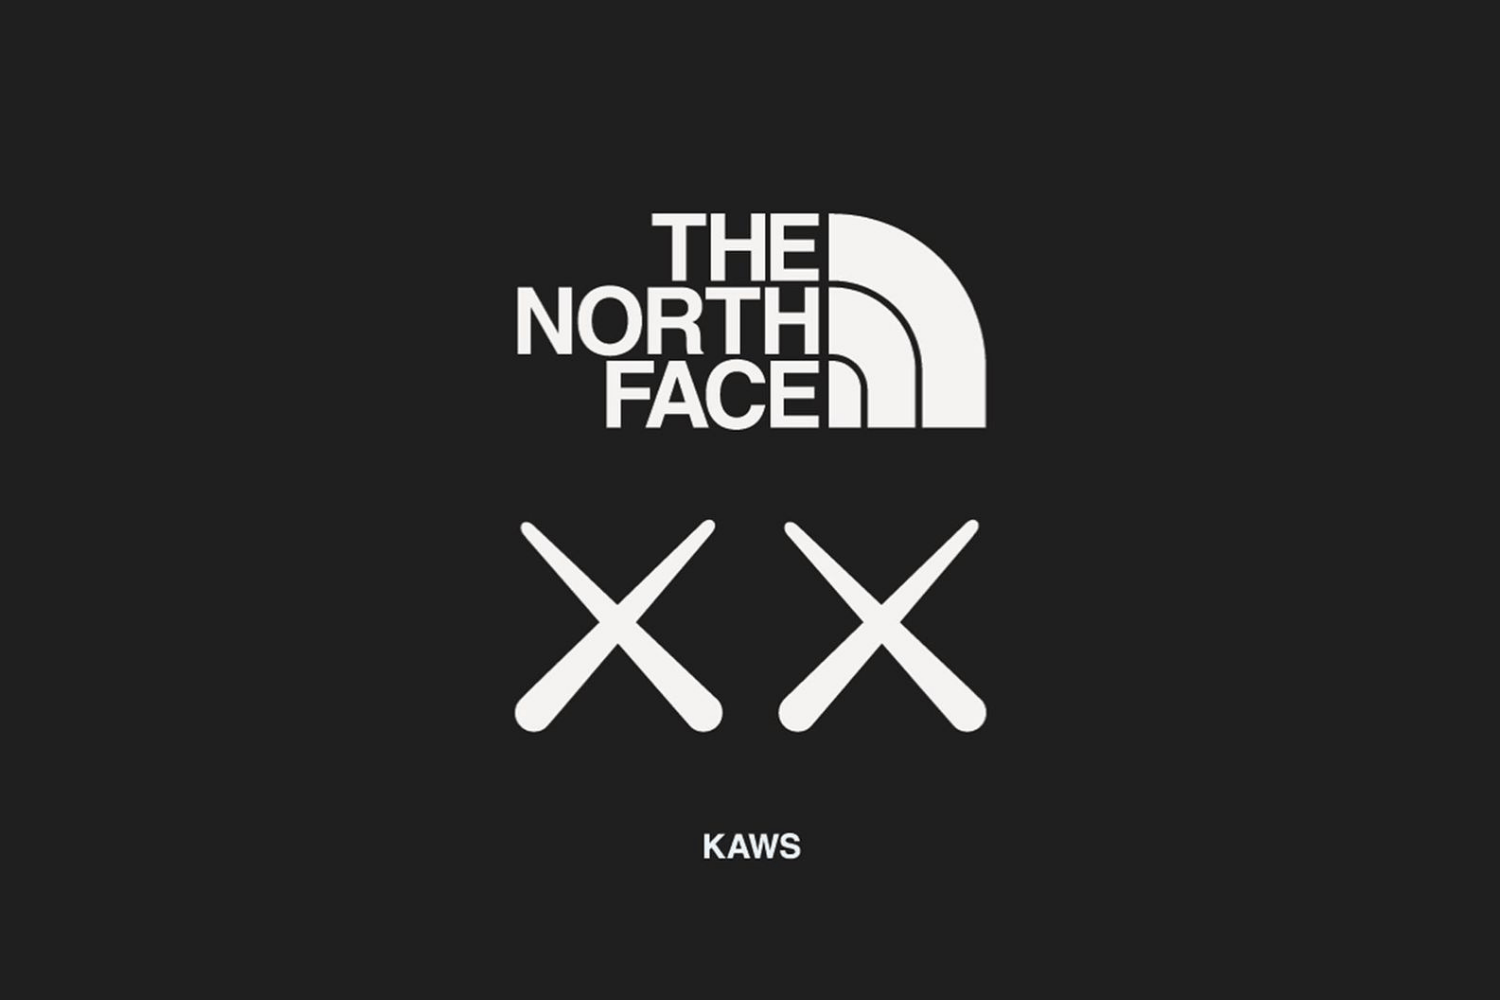 KAWS x The North Face arbeiten in 2022 zusammen